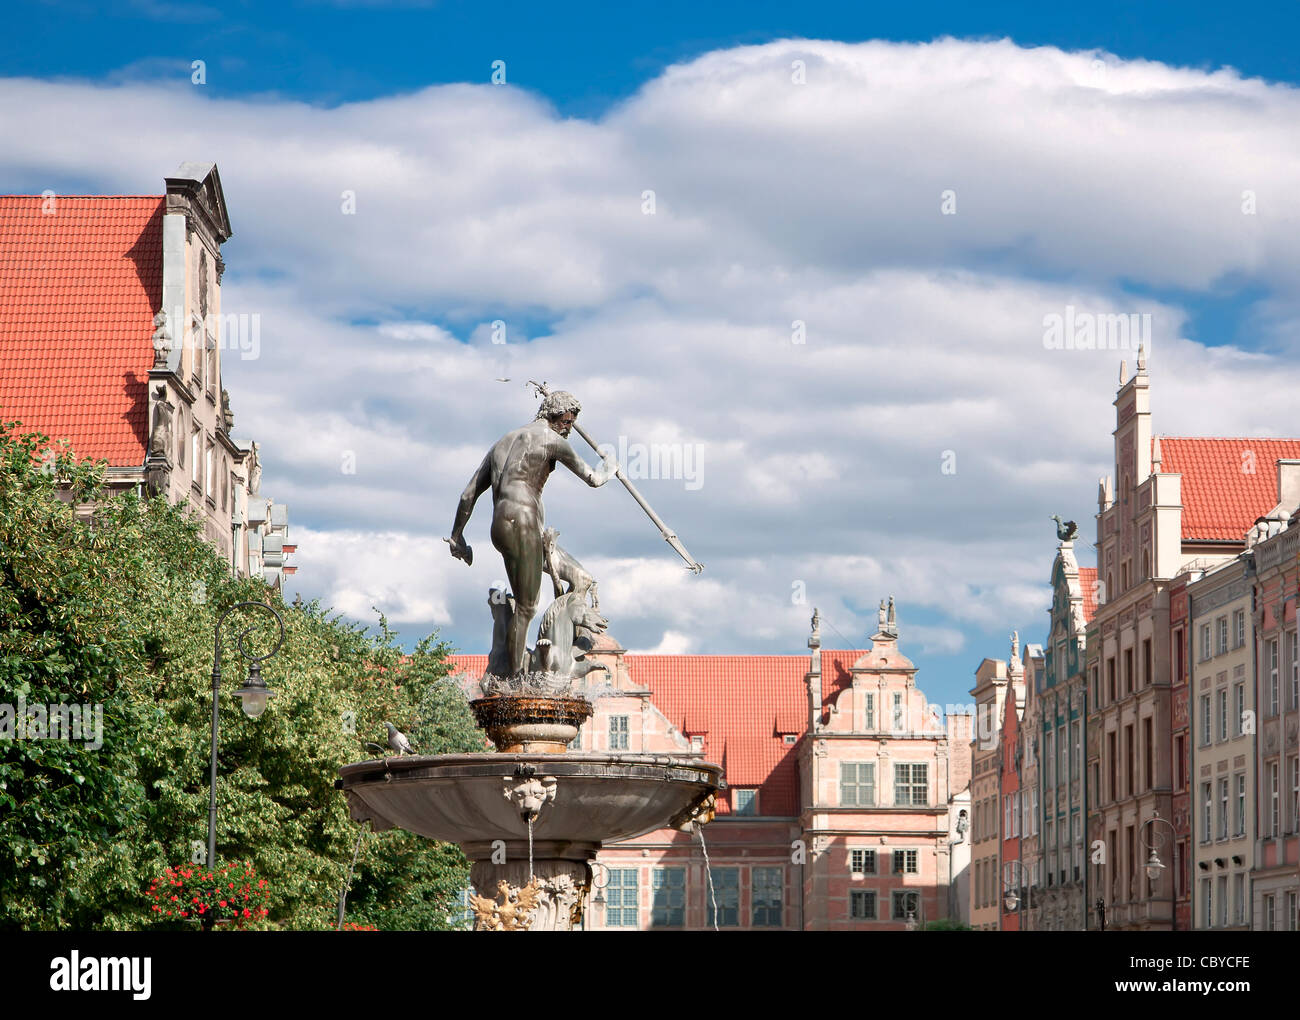 Berühmte Städte in Polen - Gdansk - Danzig. Hafenstadt am Baltischen Meer - Gdansk. Sehenswürdigkeiten in der Altstadt. Statue von Neptun. Stockfoto